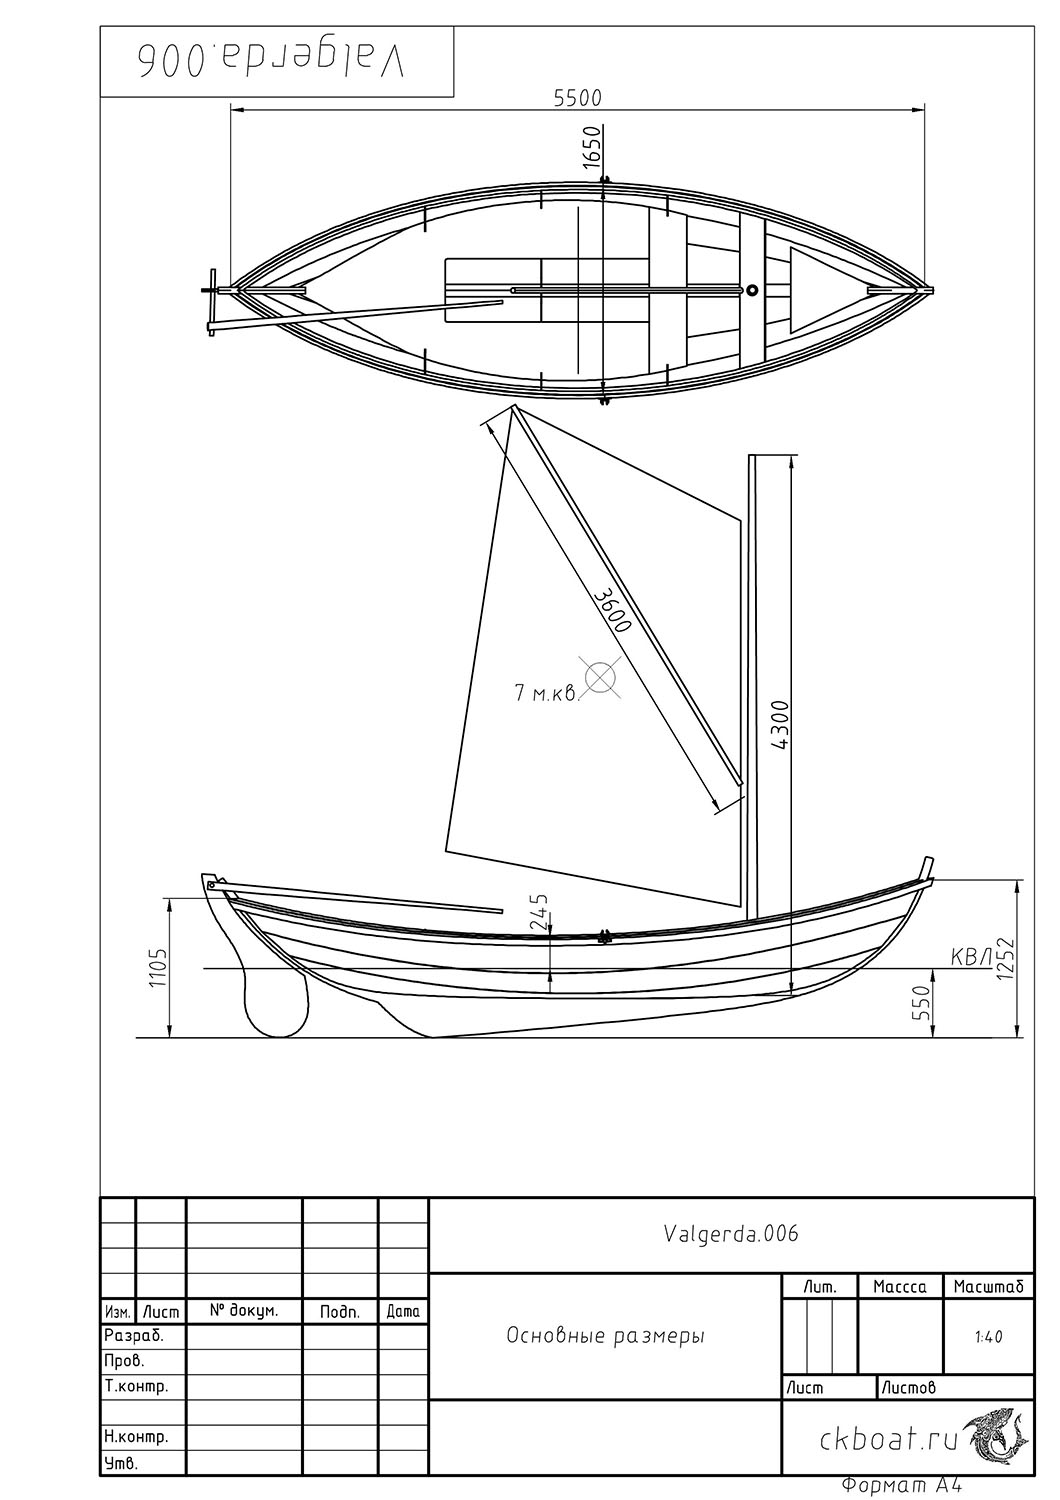 Основные размеры парусной лодки Valgerda